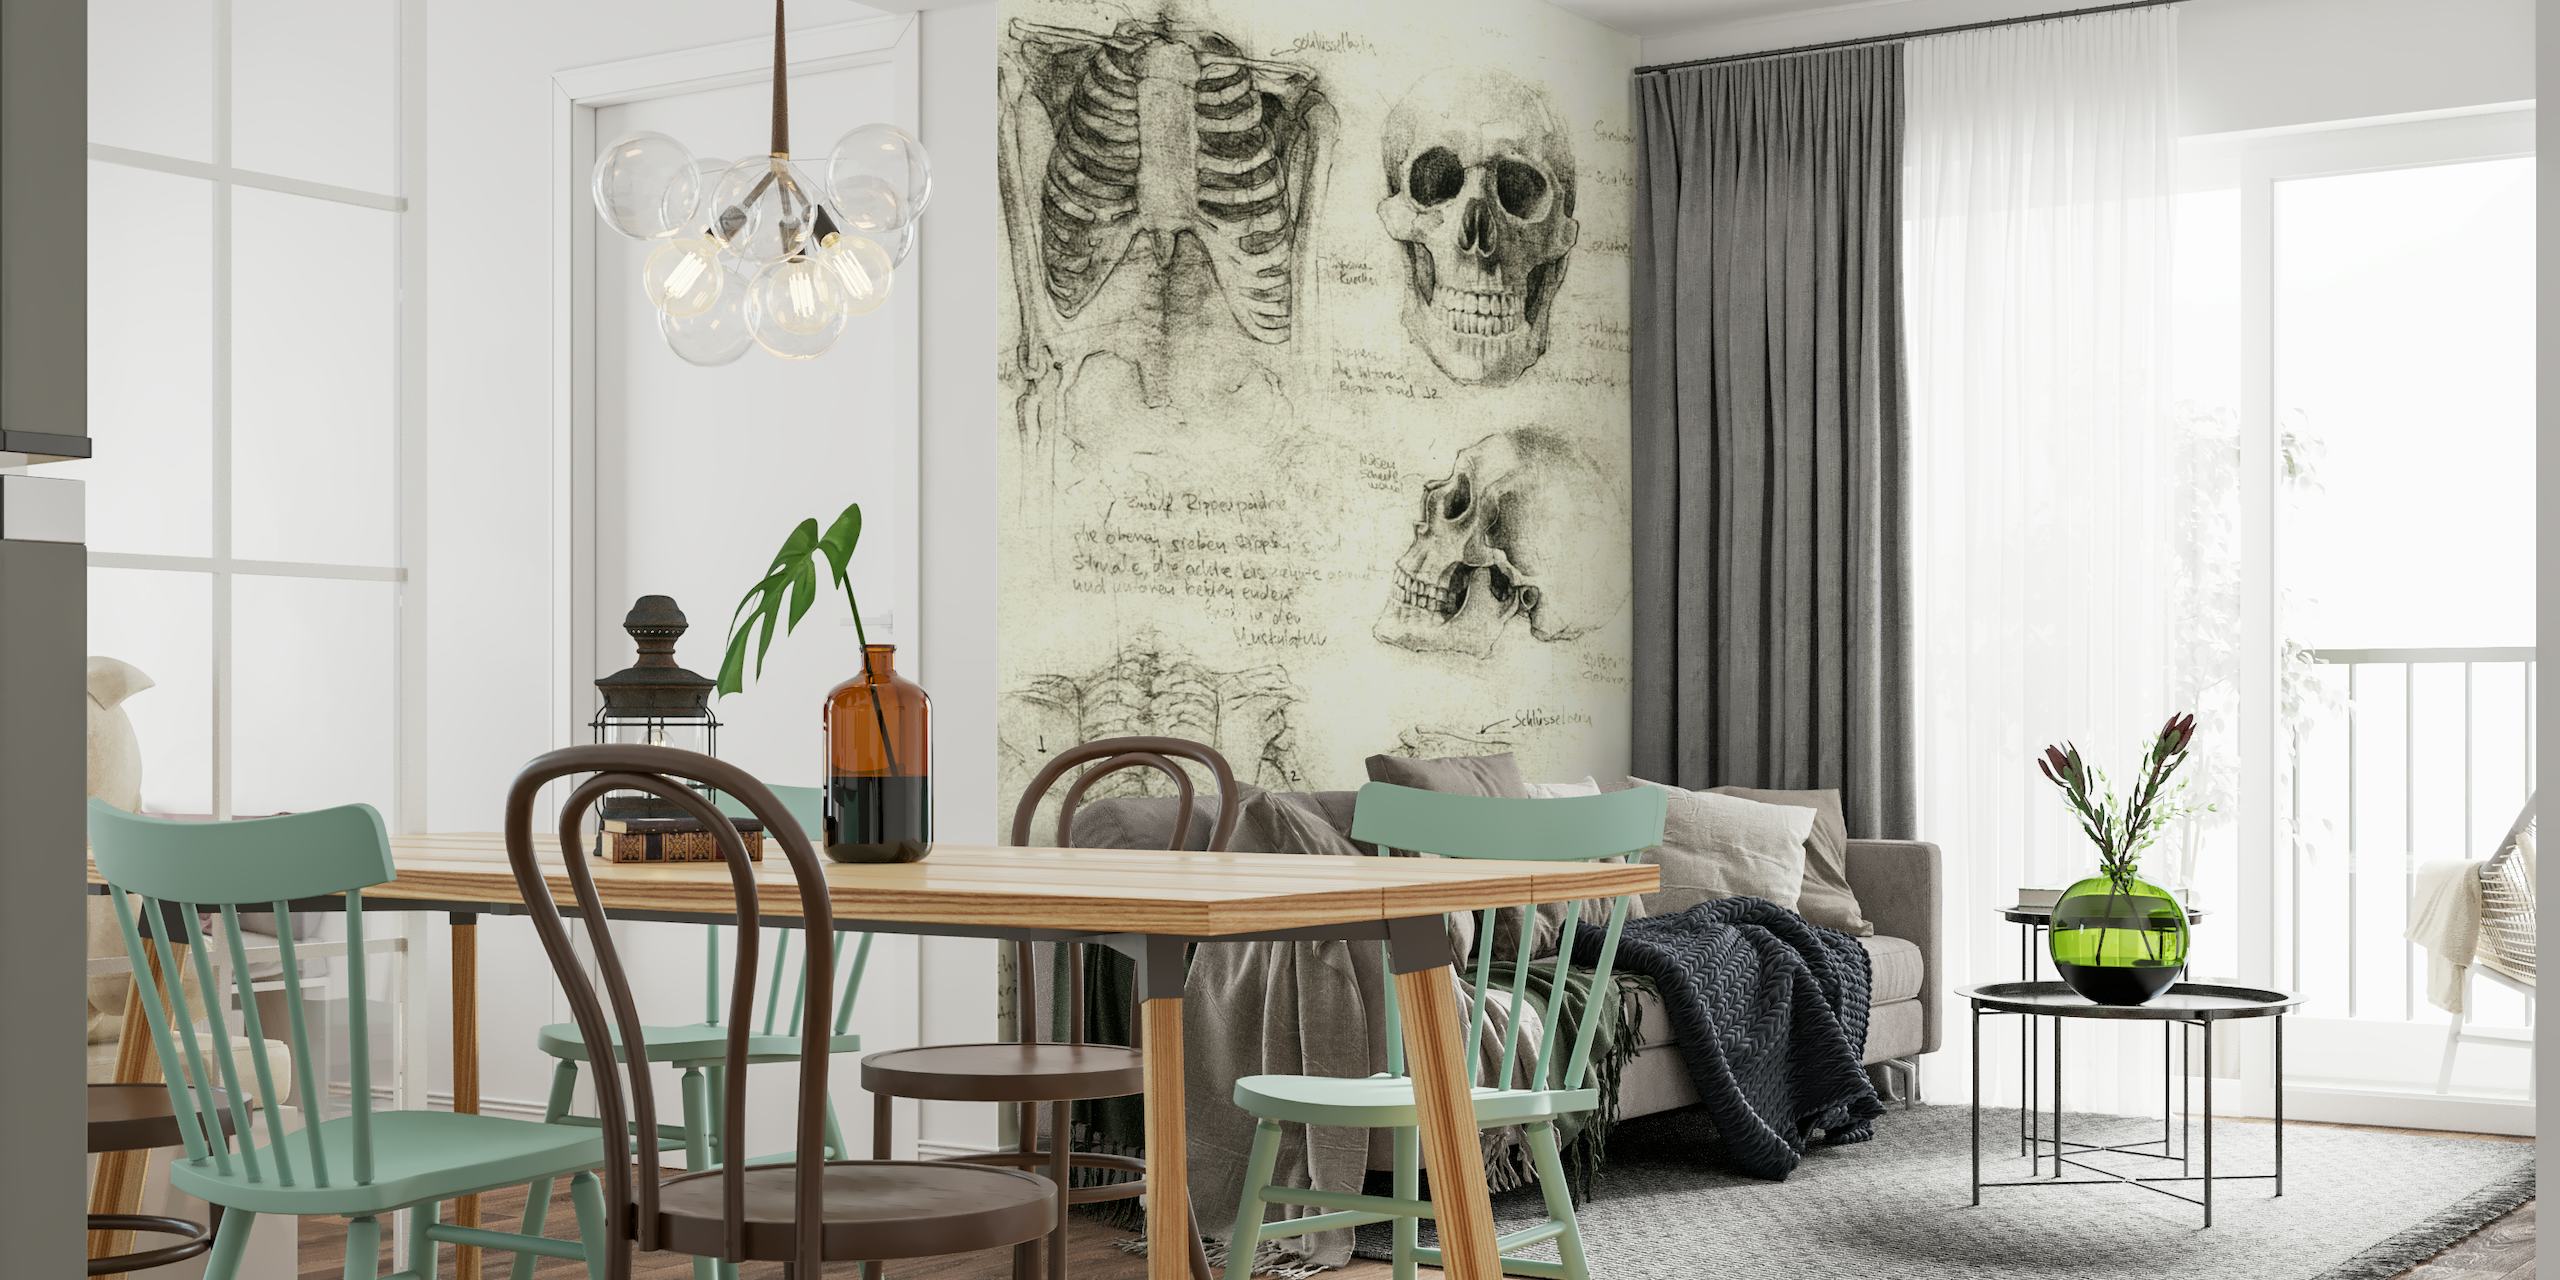 Anatomisk skelet skitser vægmaleri med detaljerede tegninger af menneskelige kranier og knogler